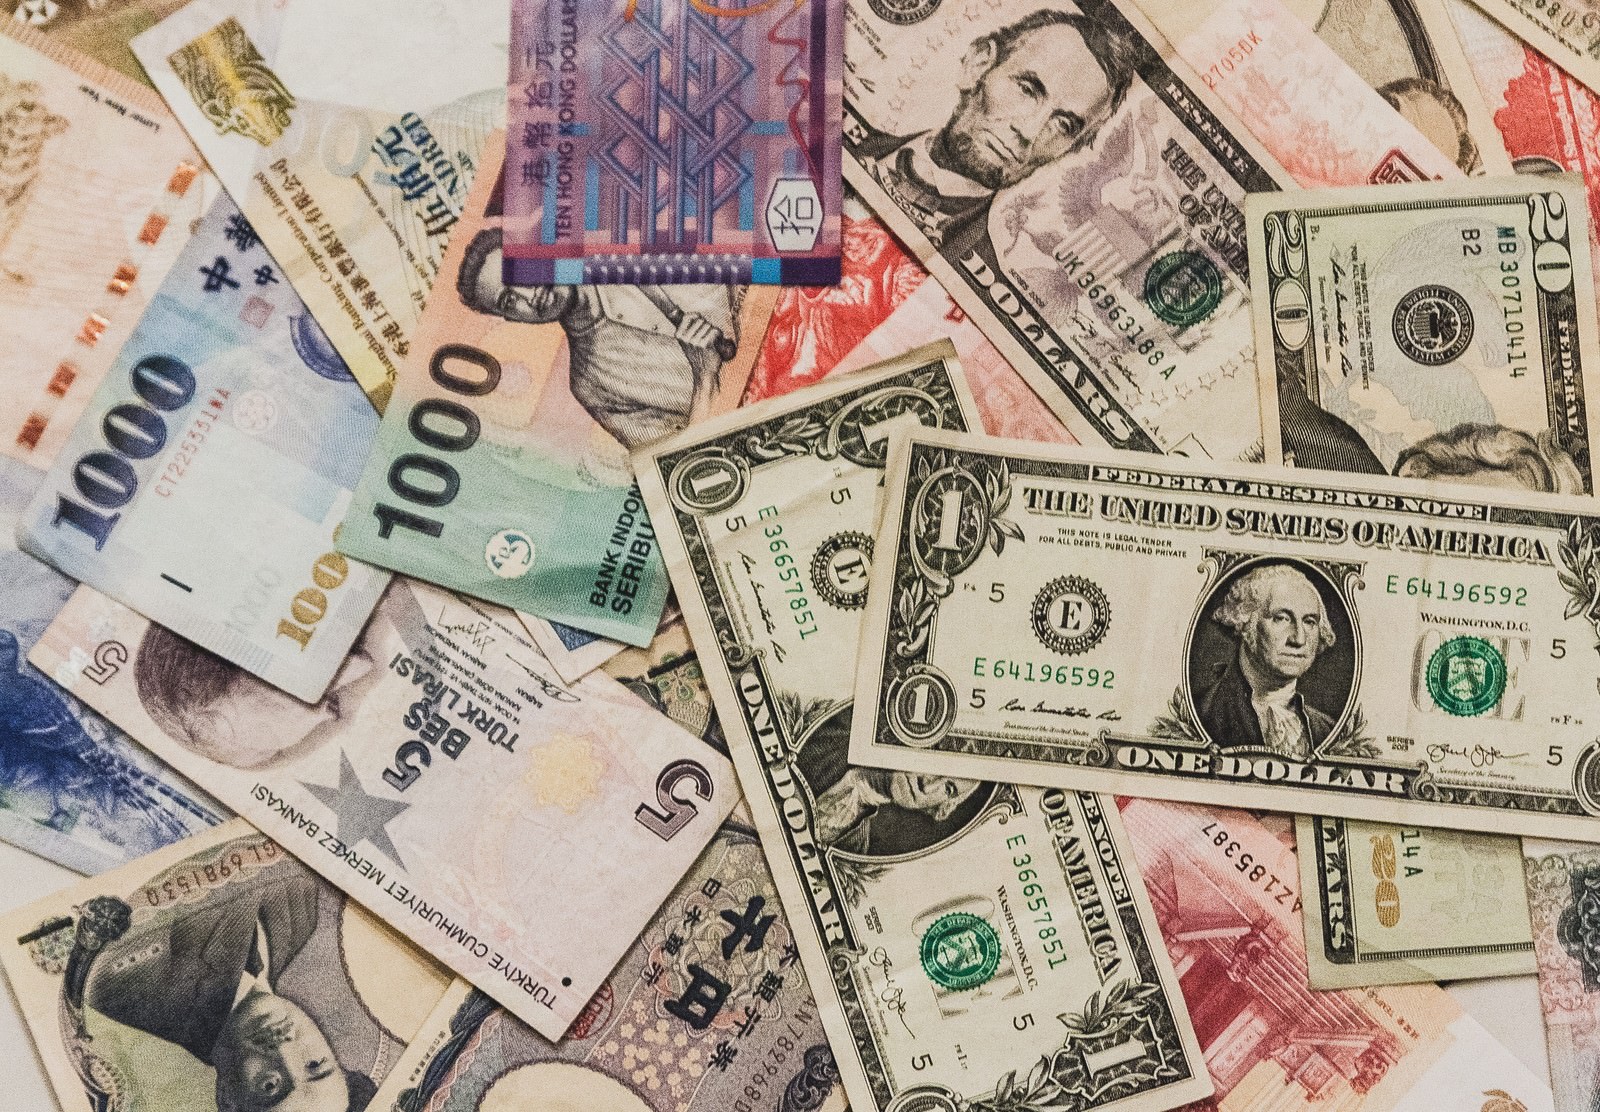 「散らばった海外の紙幣 | フリー素材のぱくたそ」の写真